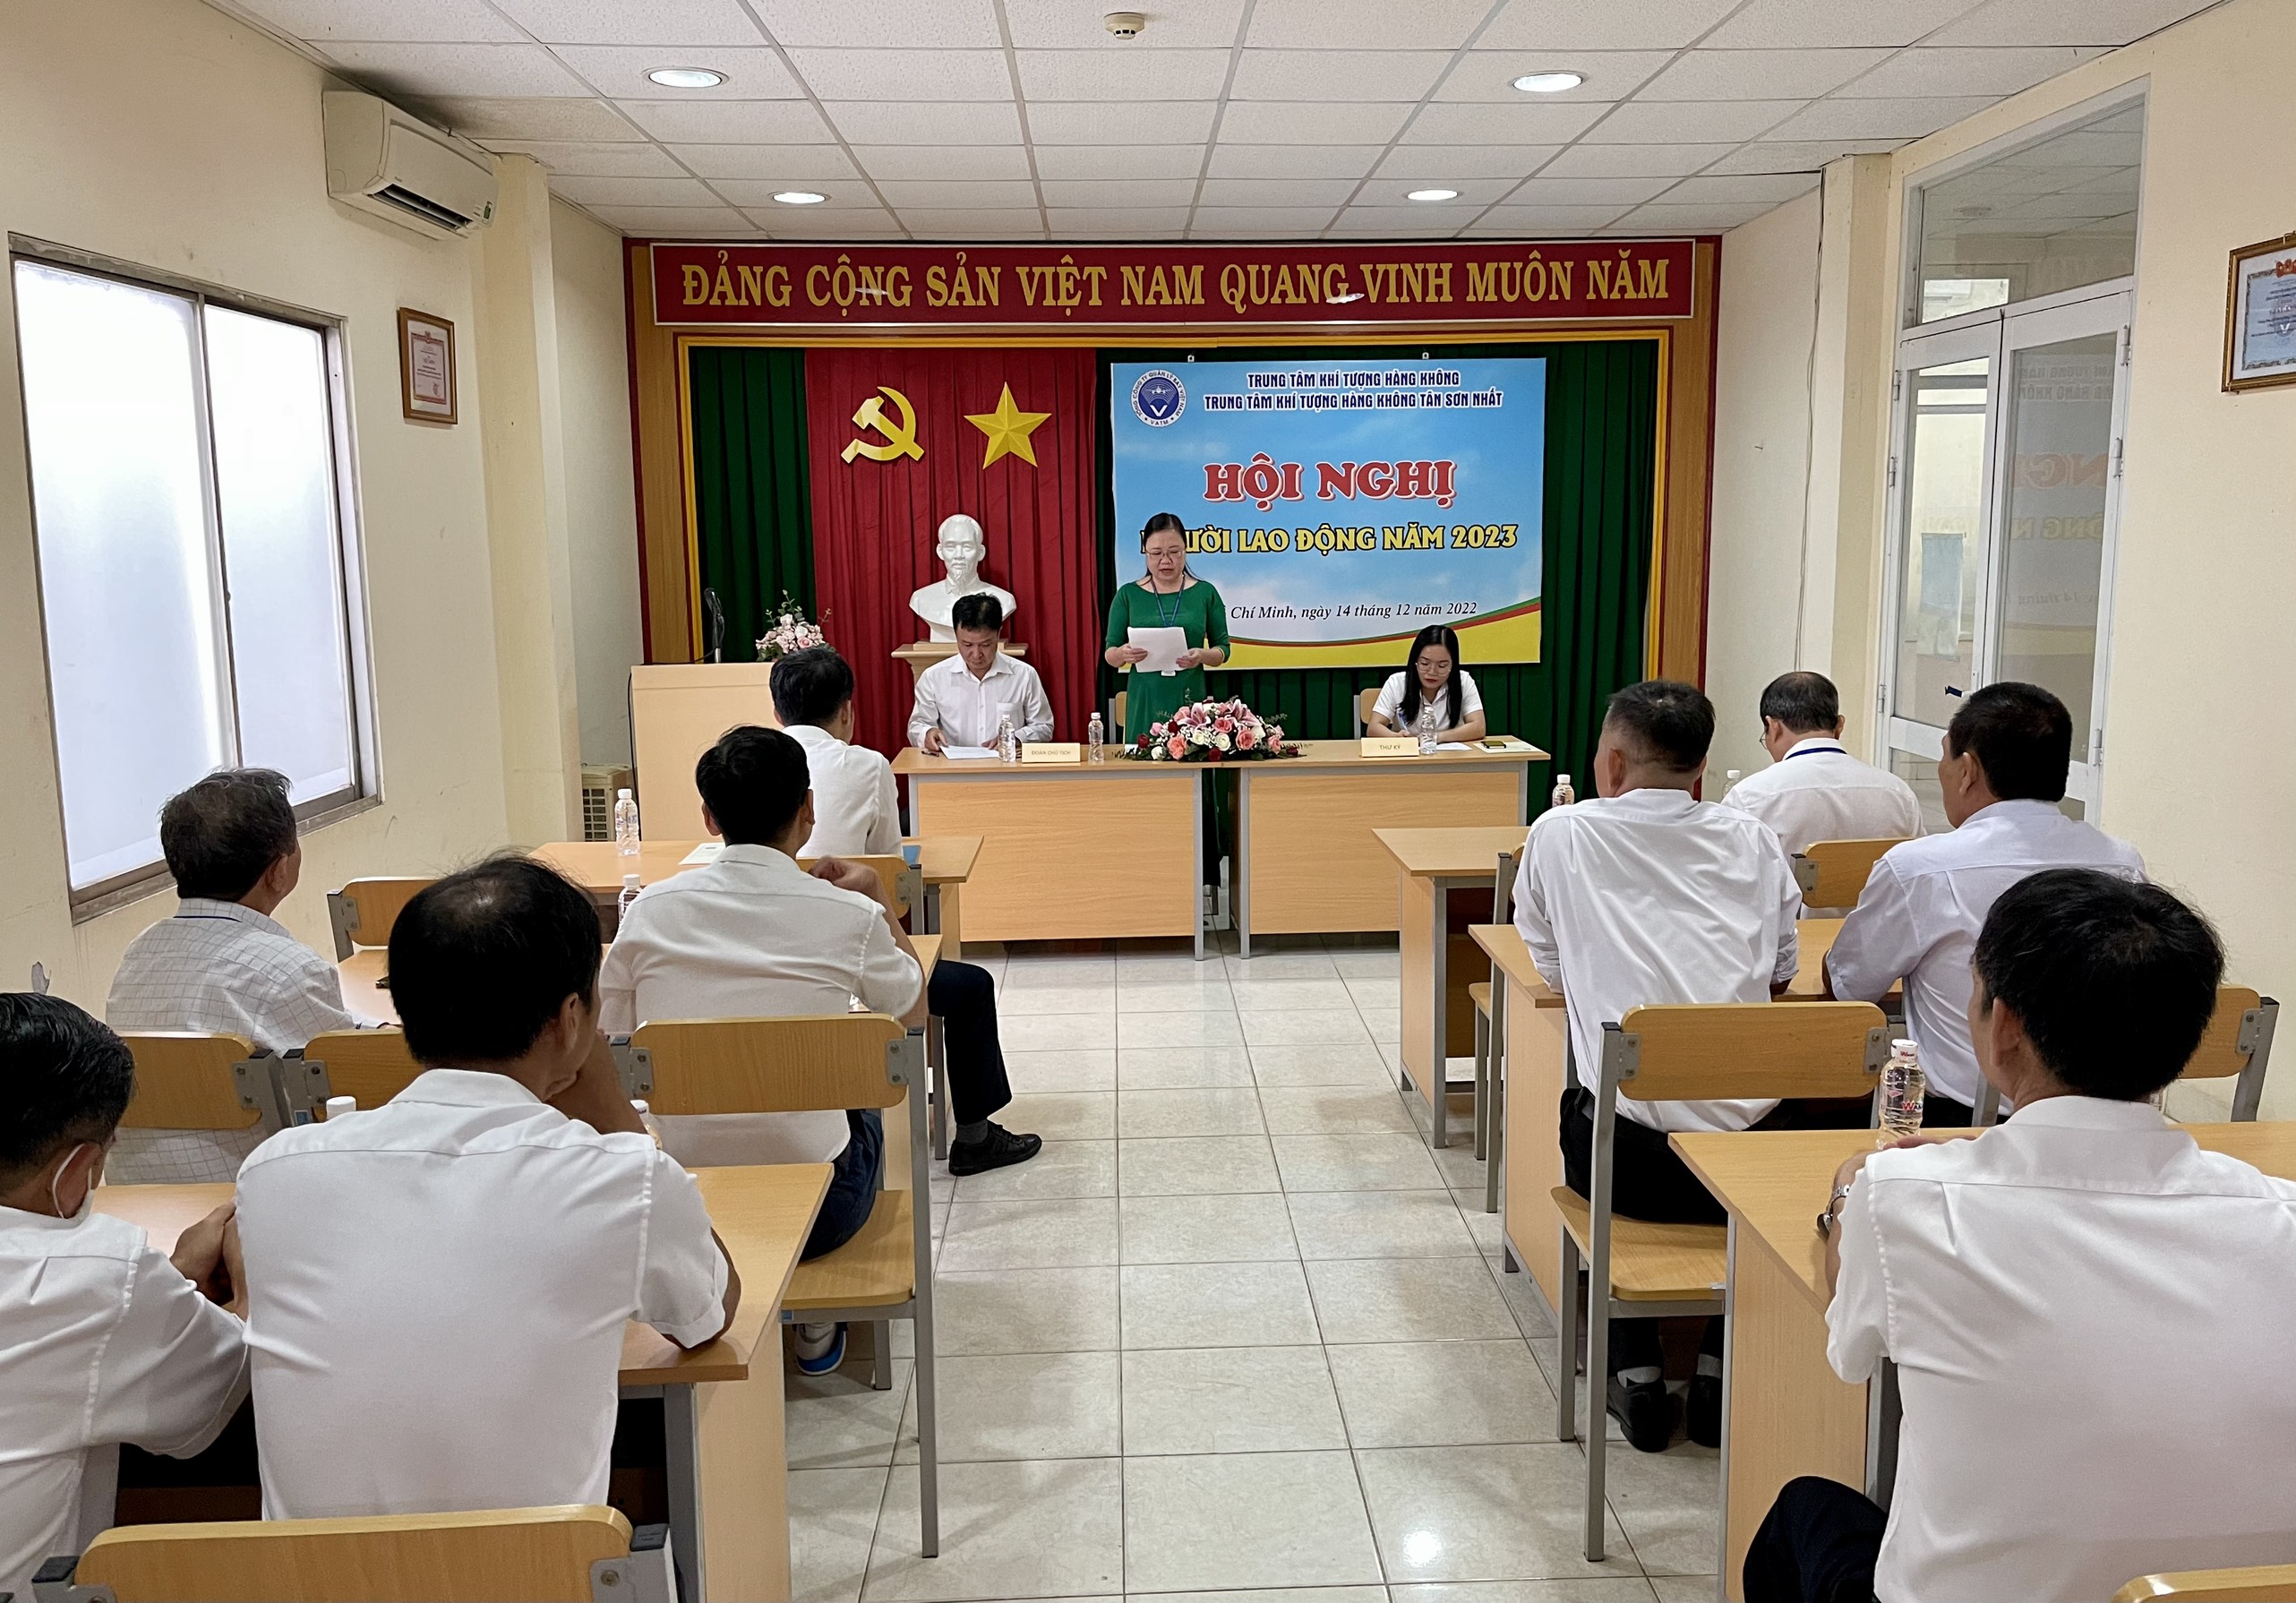 Trung tâm Khí tượng hàng không Tân Sơn Nhất tổ chức Hội nghị Người lao động năm 2023